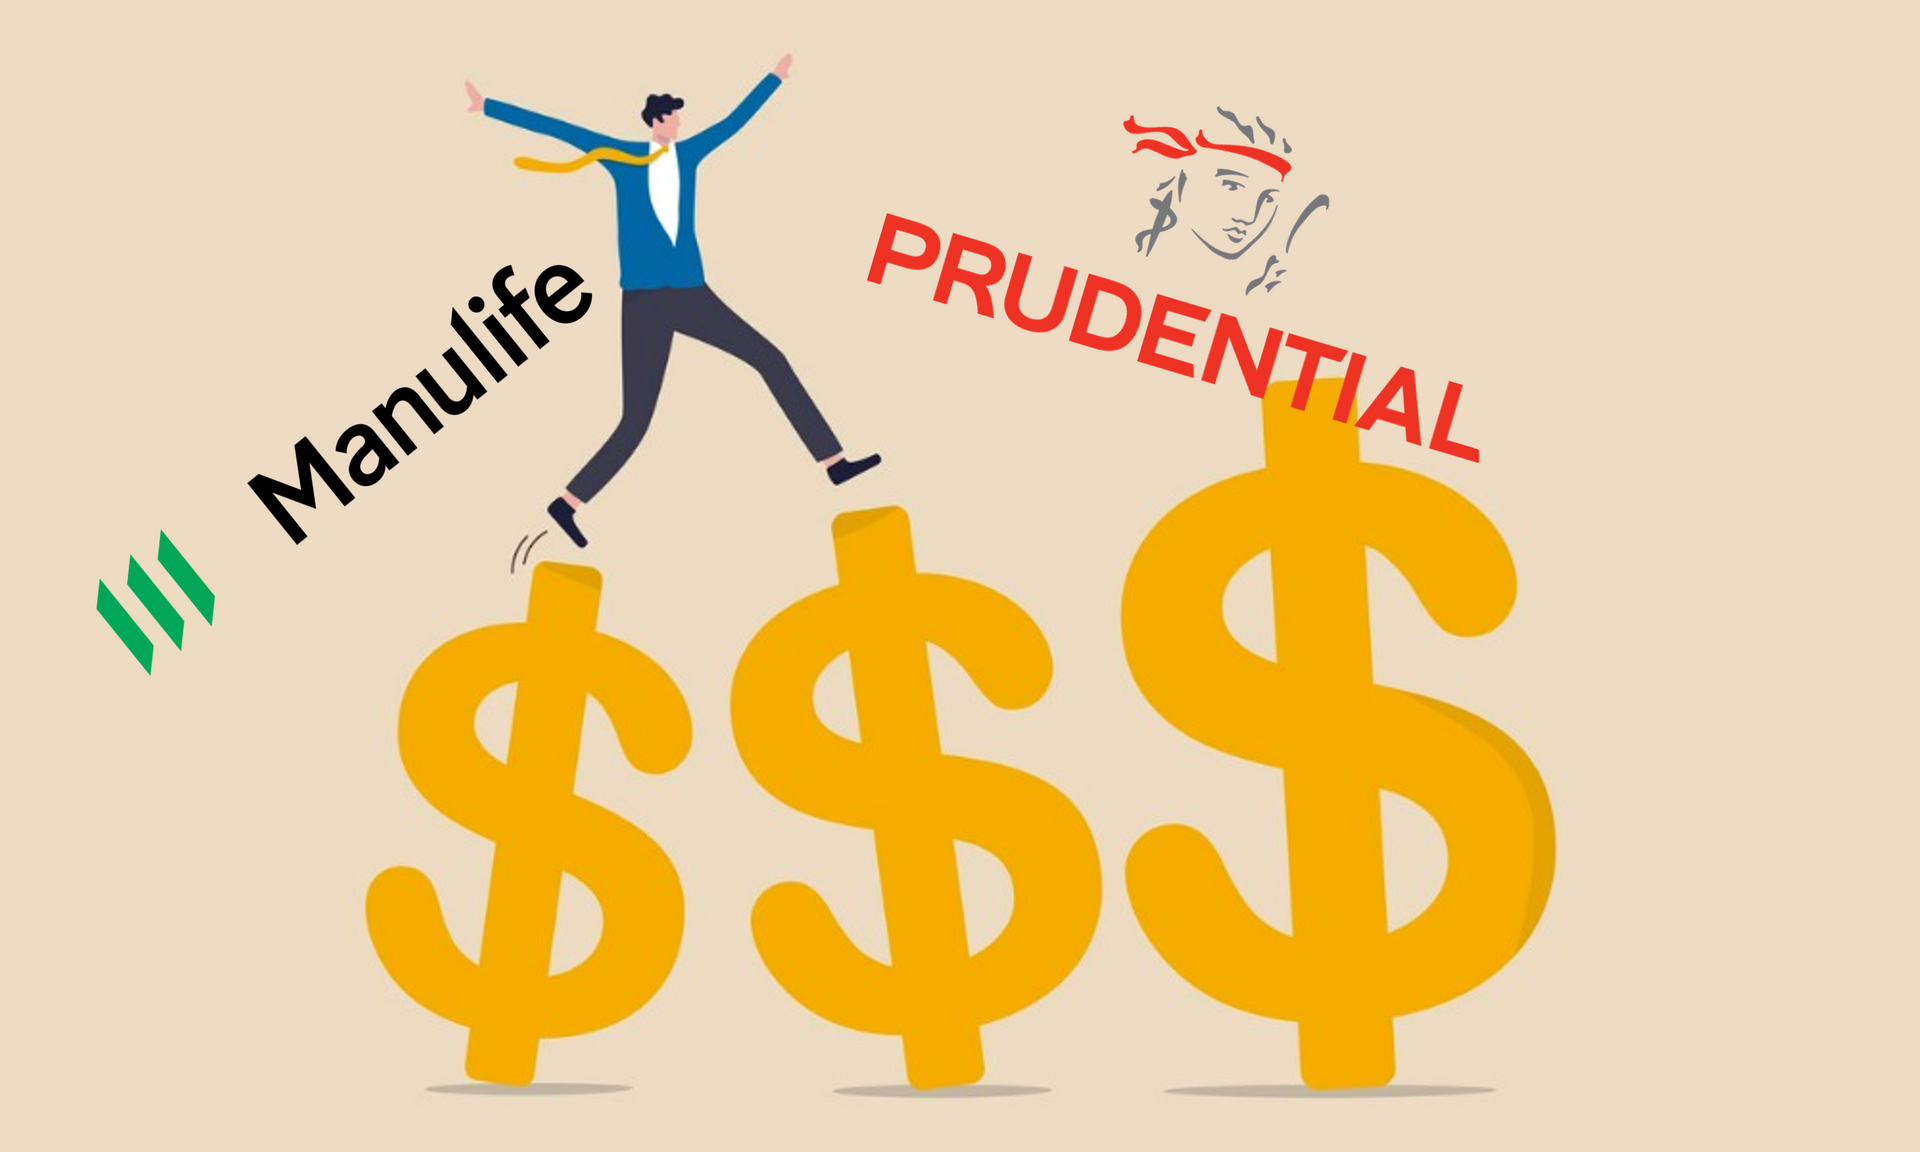 Không kém cạnh Manulife, Bảo hiểm Prudential chi lương bình quân 900 triệu/người, cho nghỉ phép có lương 30 ngày